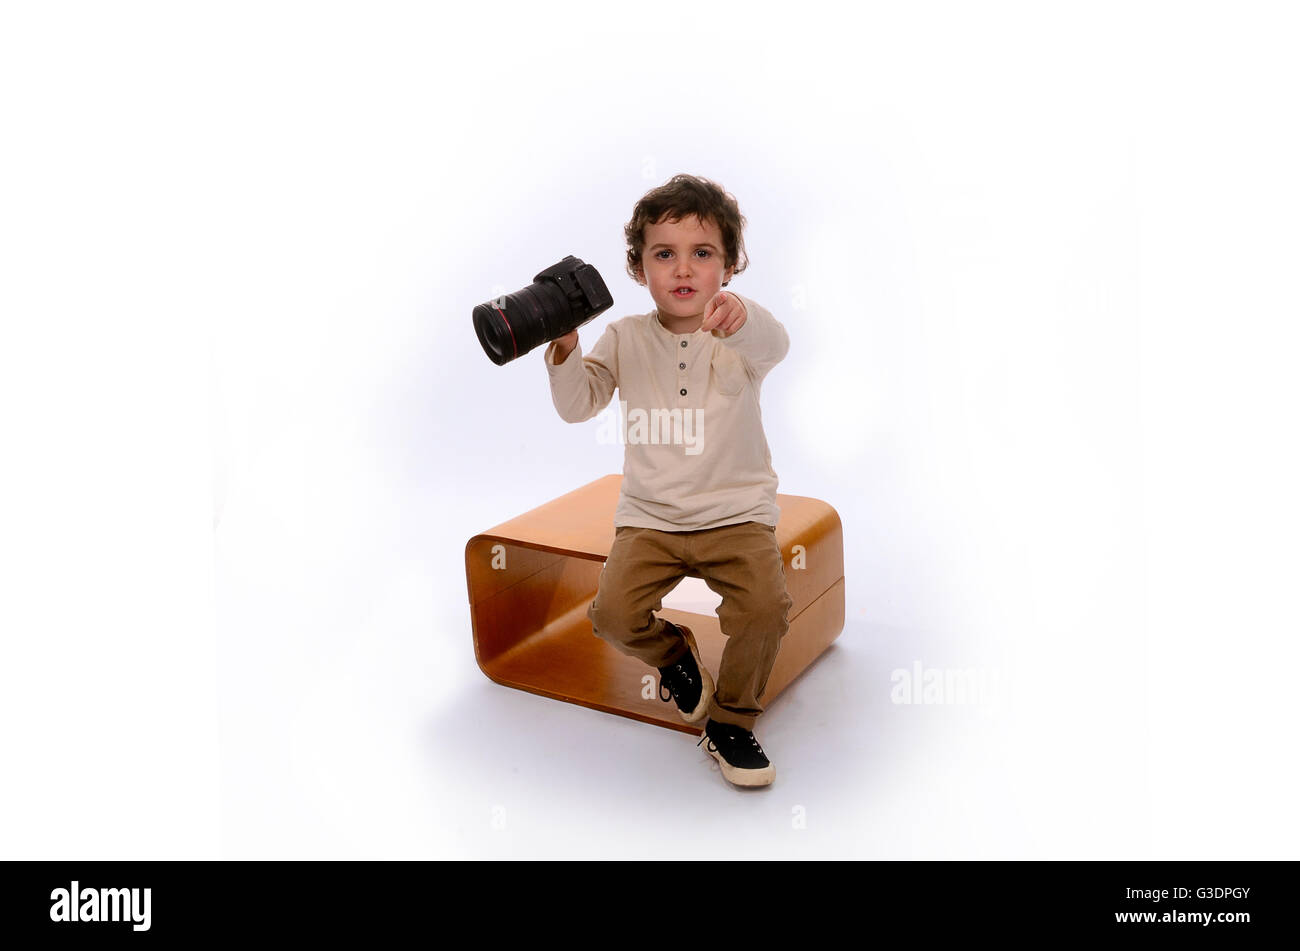 Ragazzo giocando con fotocamera digitale in studio Foto Stock